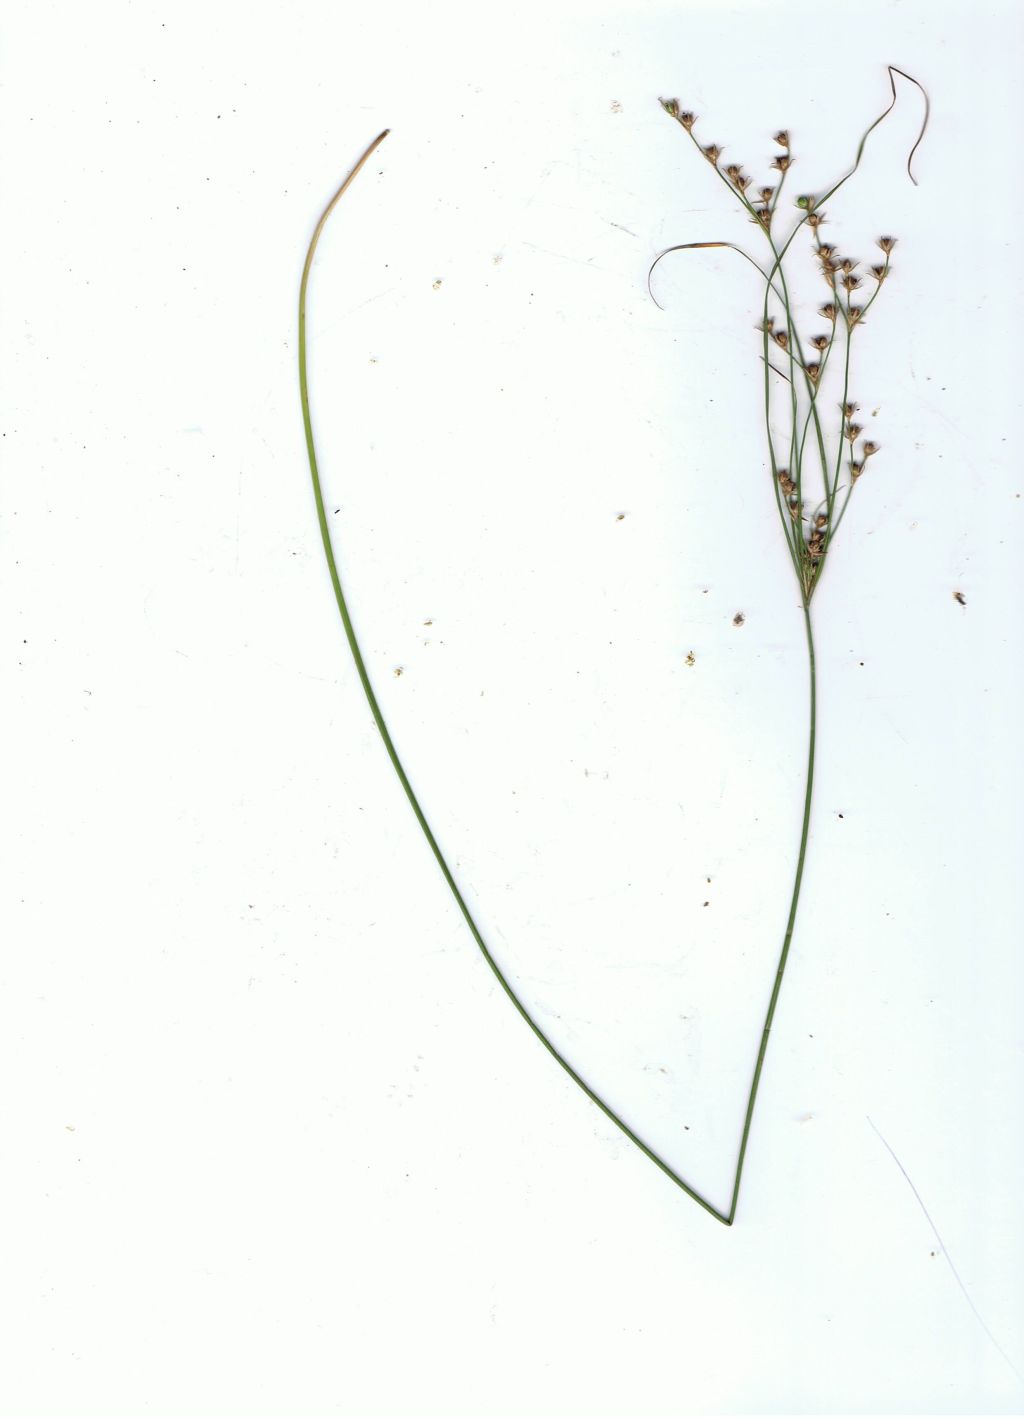 Juncus tenuis subsp. anthelatus